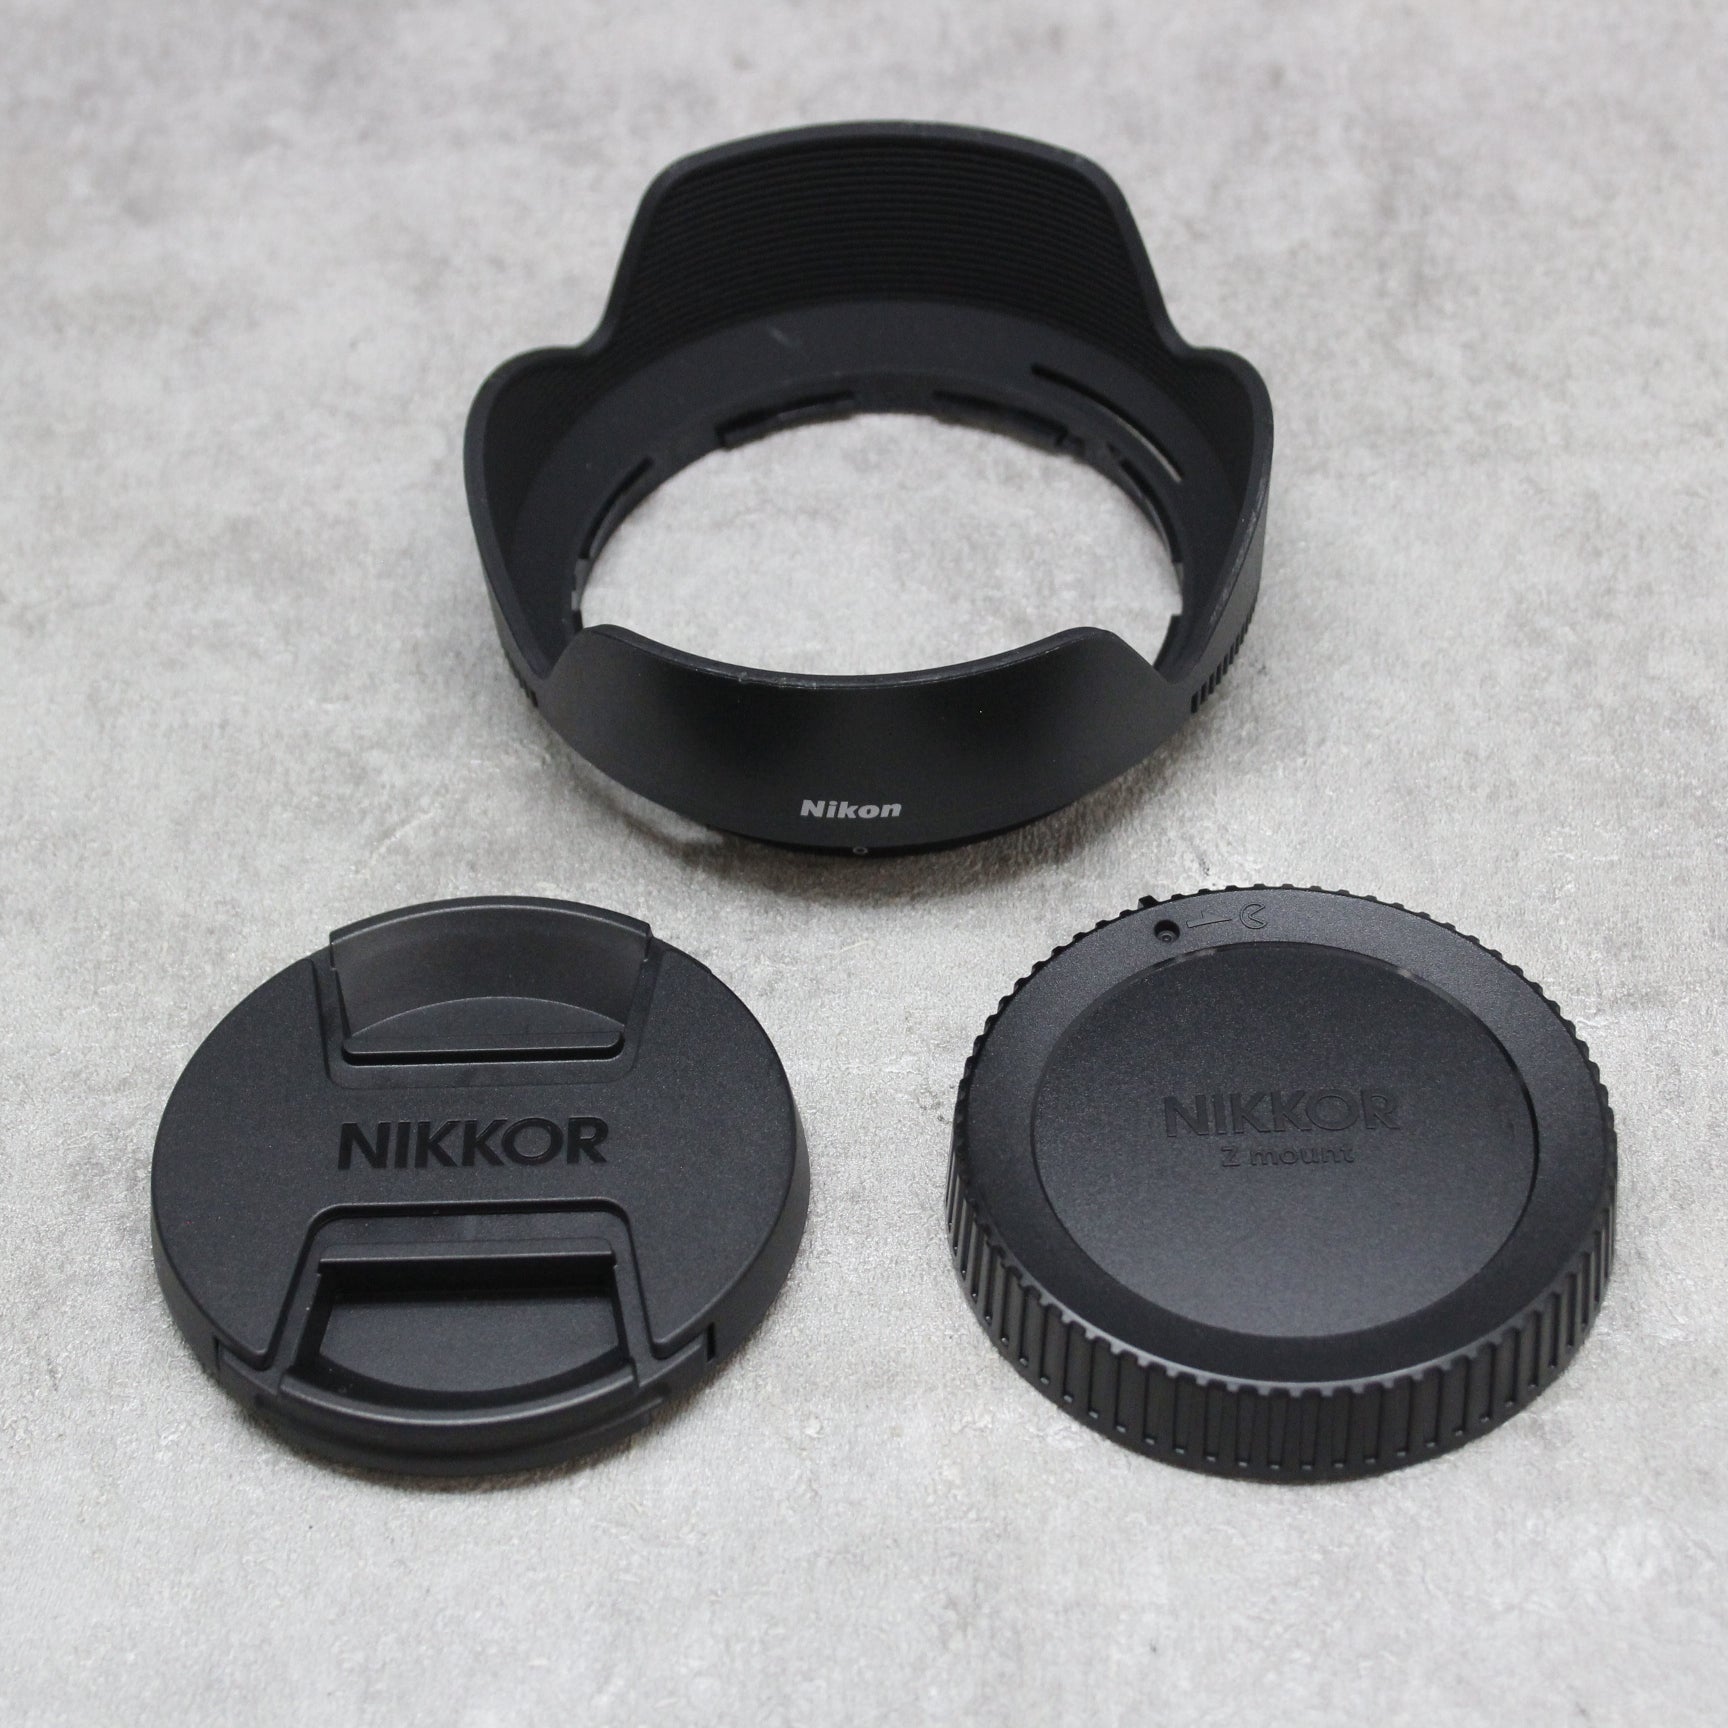 中古品 Nikon Z DX 18-140mm F3.5-6.3 VR【10月28日(土) youtube生配信でご紹介】